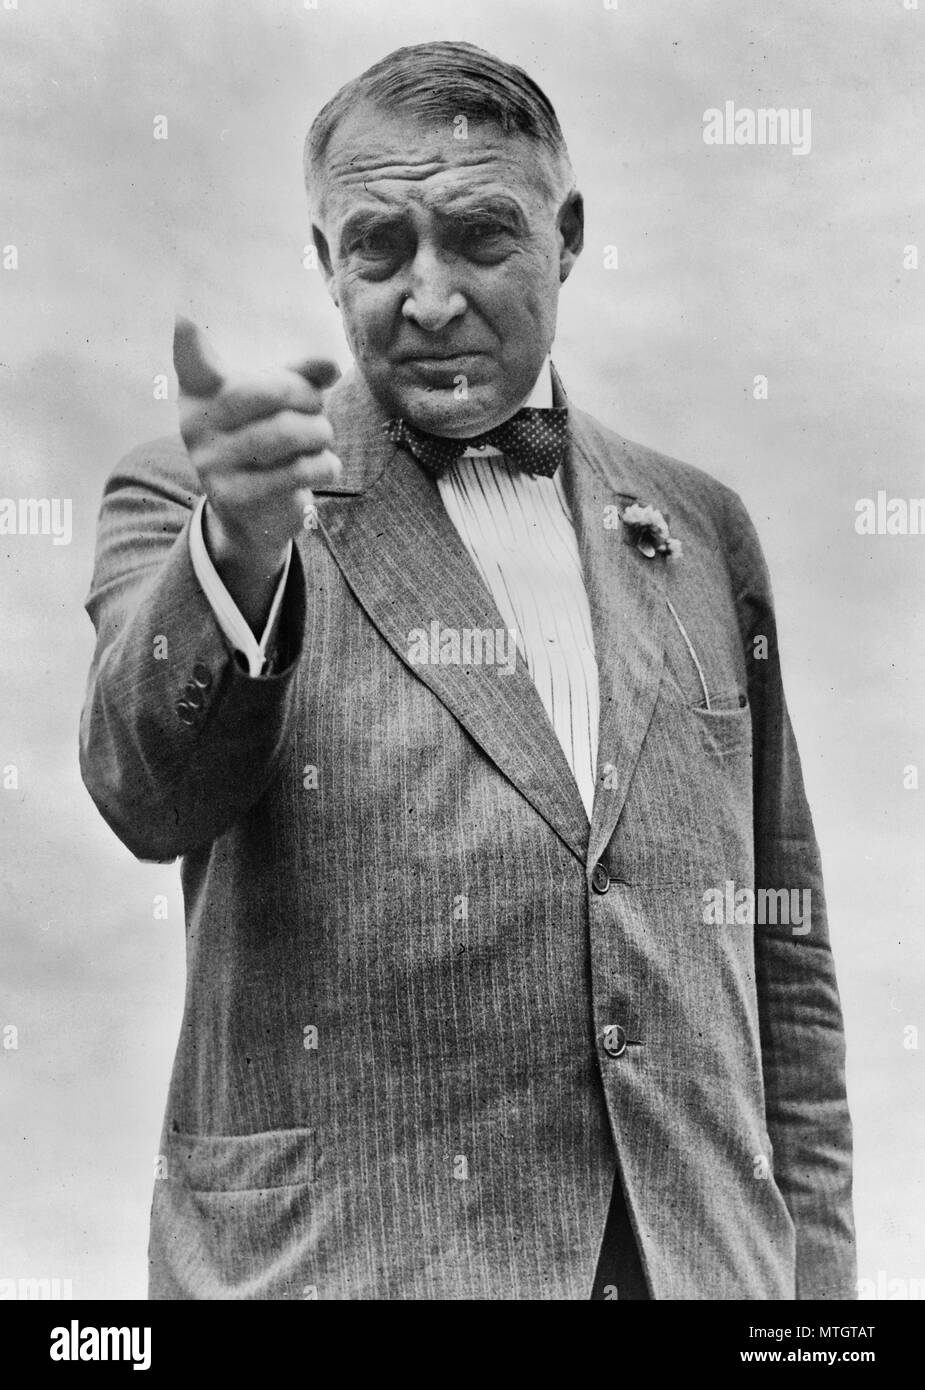 Warren G. Harding retrato de longitud media, de pie, mirando hacia la parte delantera, gesticulando con la mano derecha, el dedo índice extendido. 1920 la campaña presidencial de EE.UU. Foto de stock